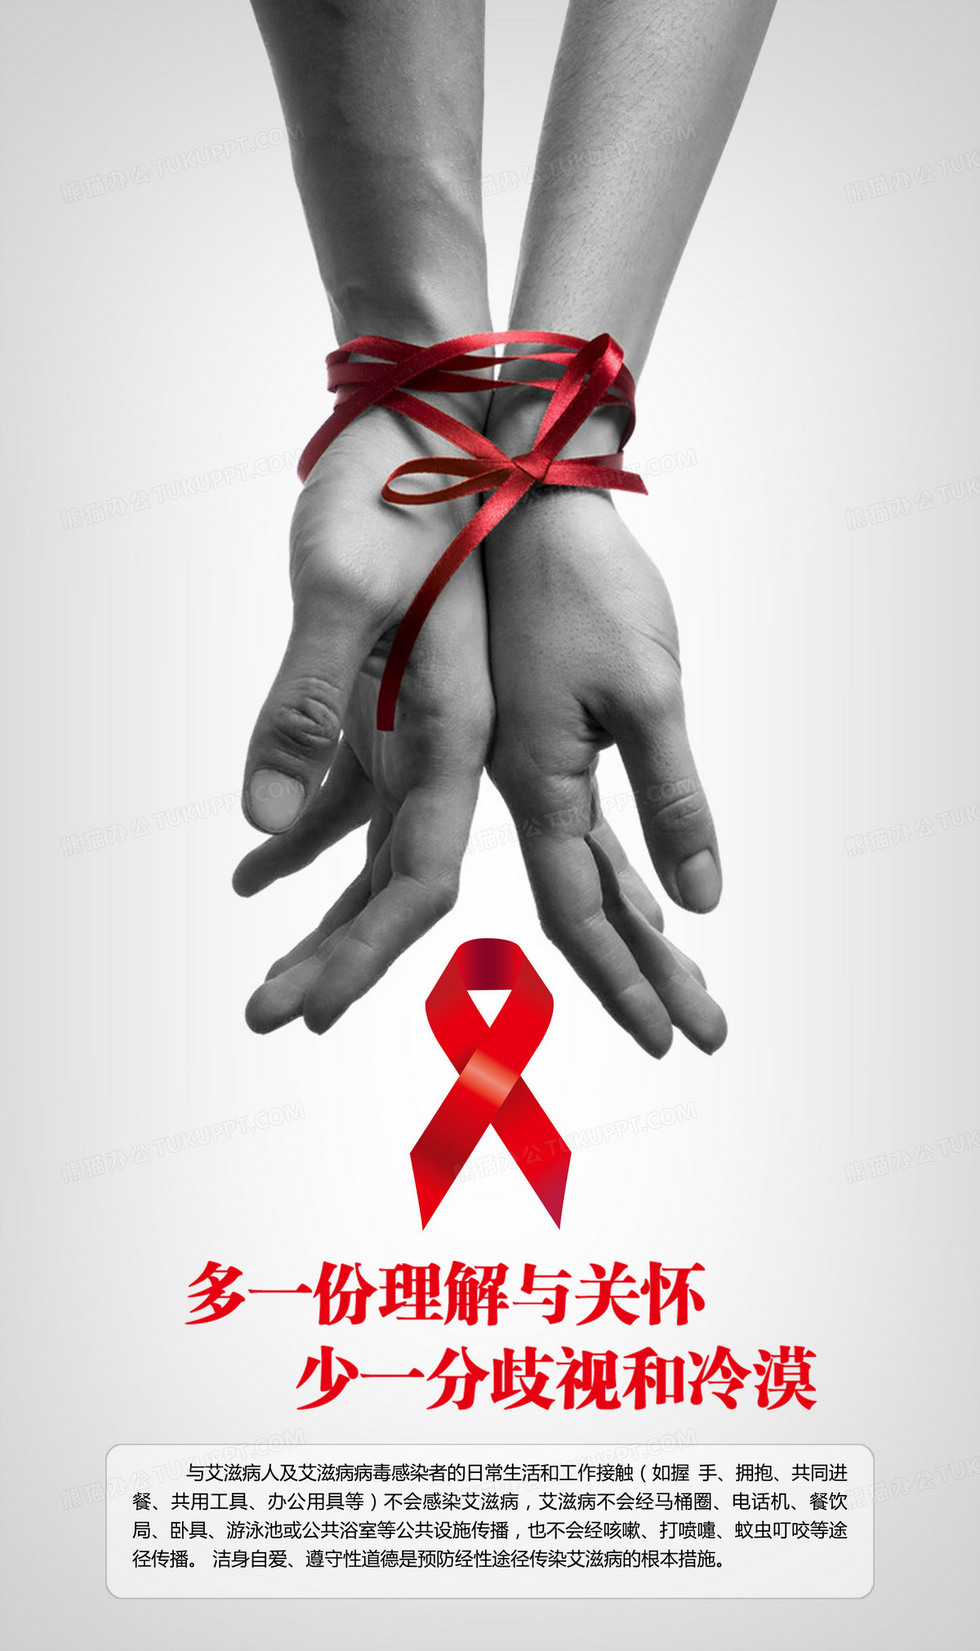 <font color="red">HIV</font> Med：<font color="red">HIV</font>和非酒精性脂肪性肝病患者改用以雷特格韦为基础的抗逆转录病毒疗法的效果